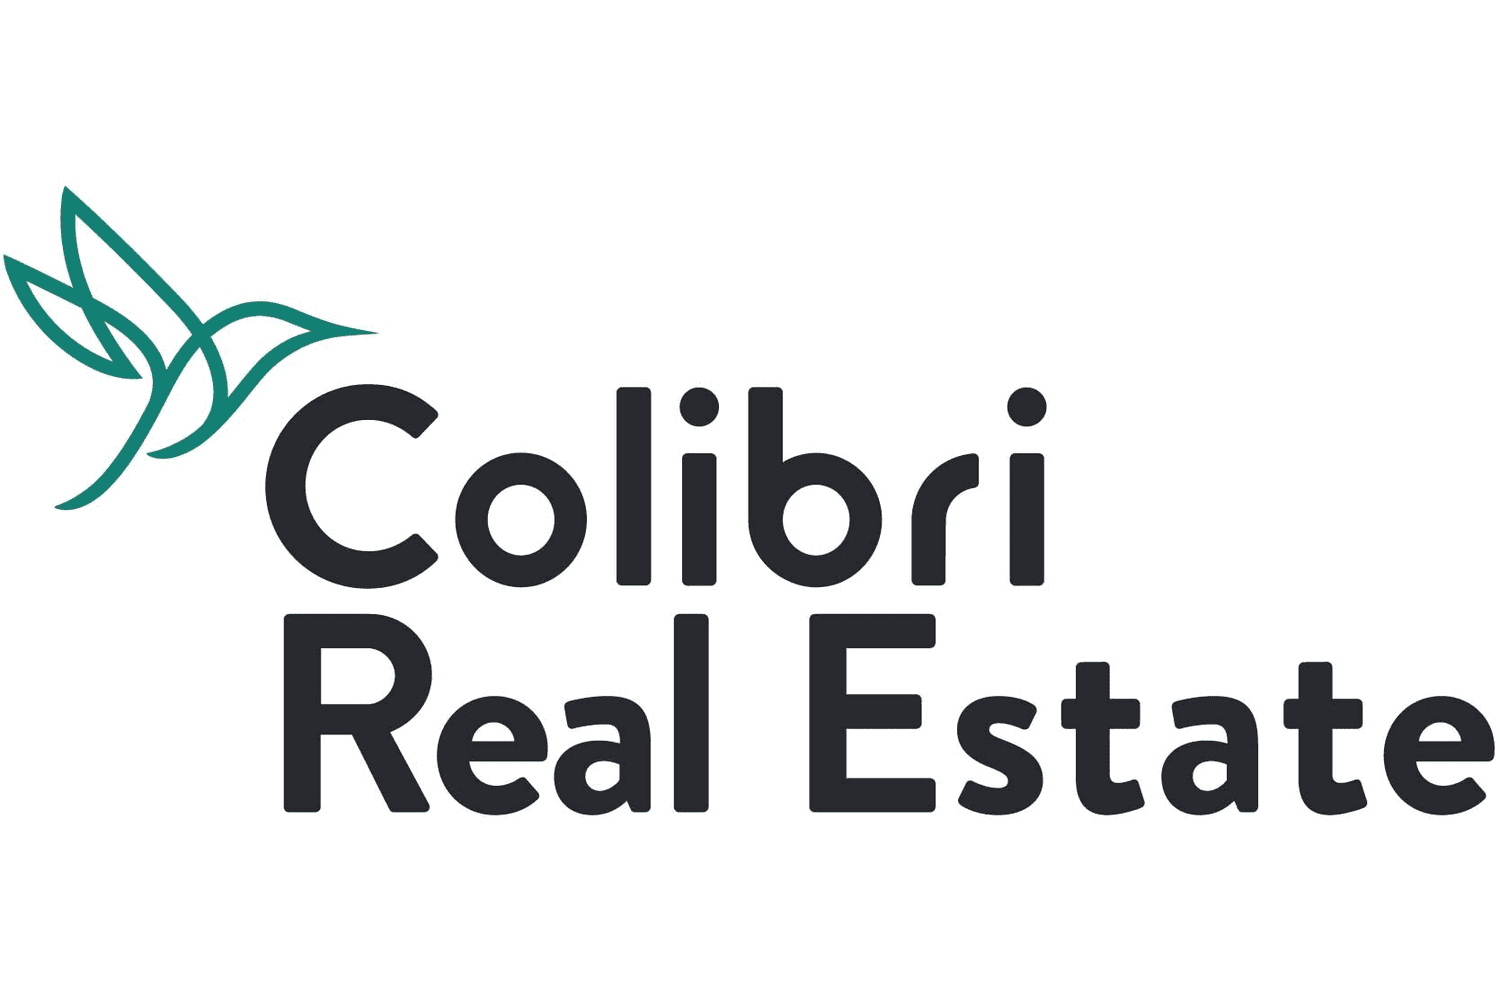 Colibri Real Estate